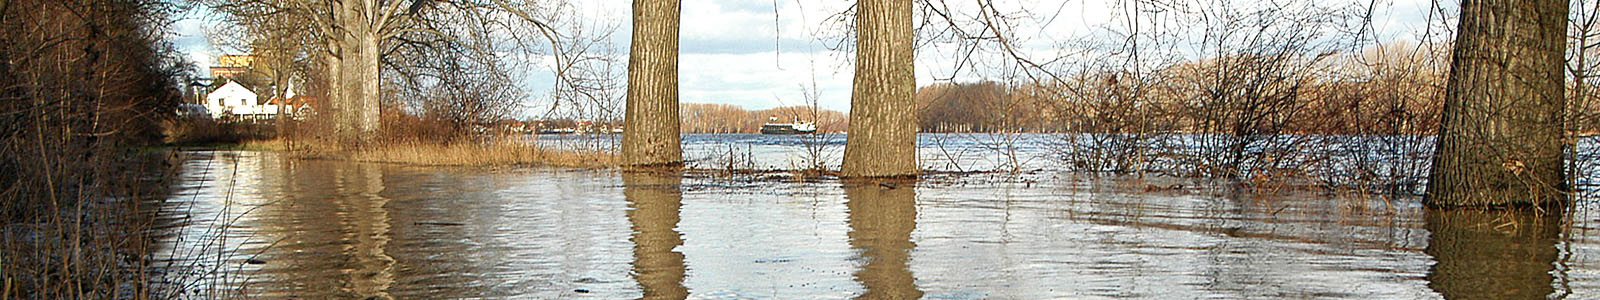 Bäume stehen im Wasser nach Hochwasser ©Feuerbach